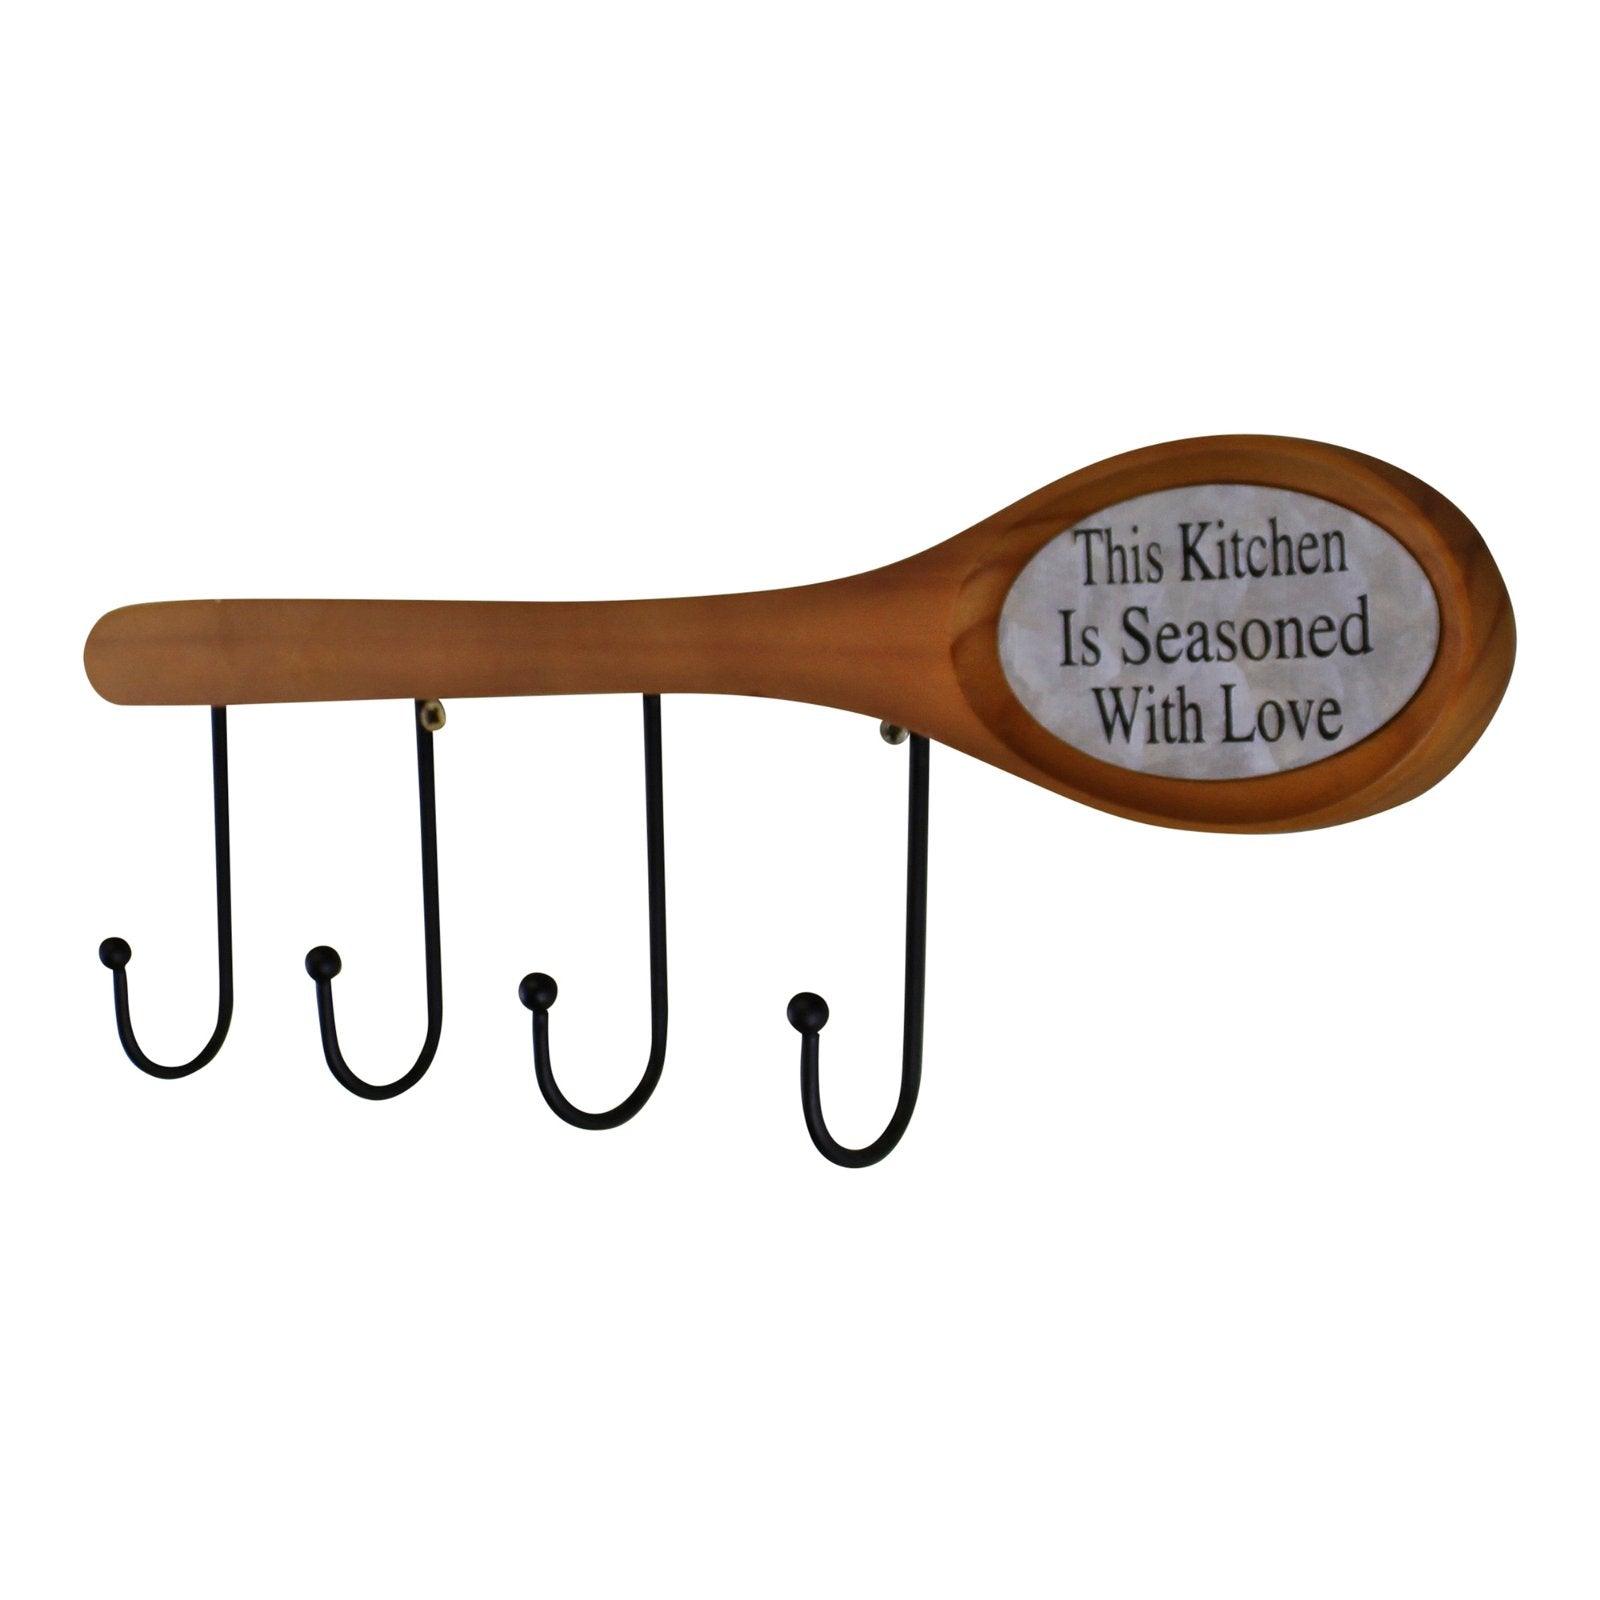 26cm Wooden Spoon With Hooks - £20.99 - Kitchen Storage 